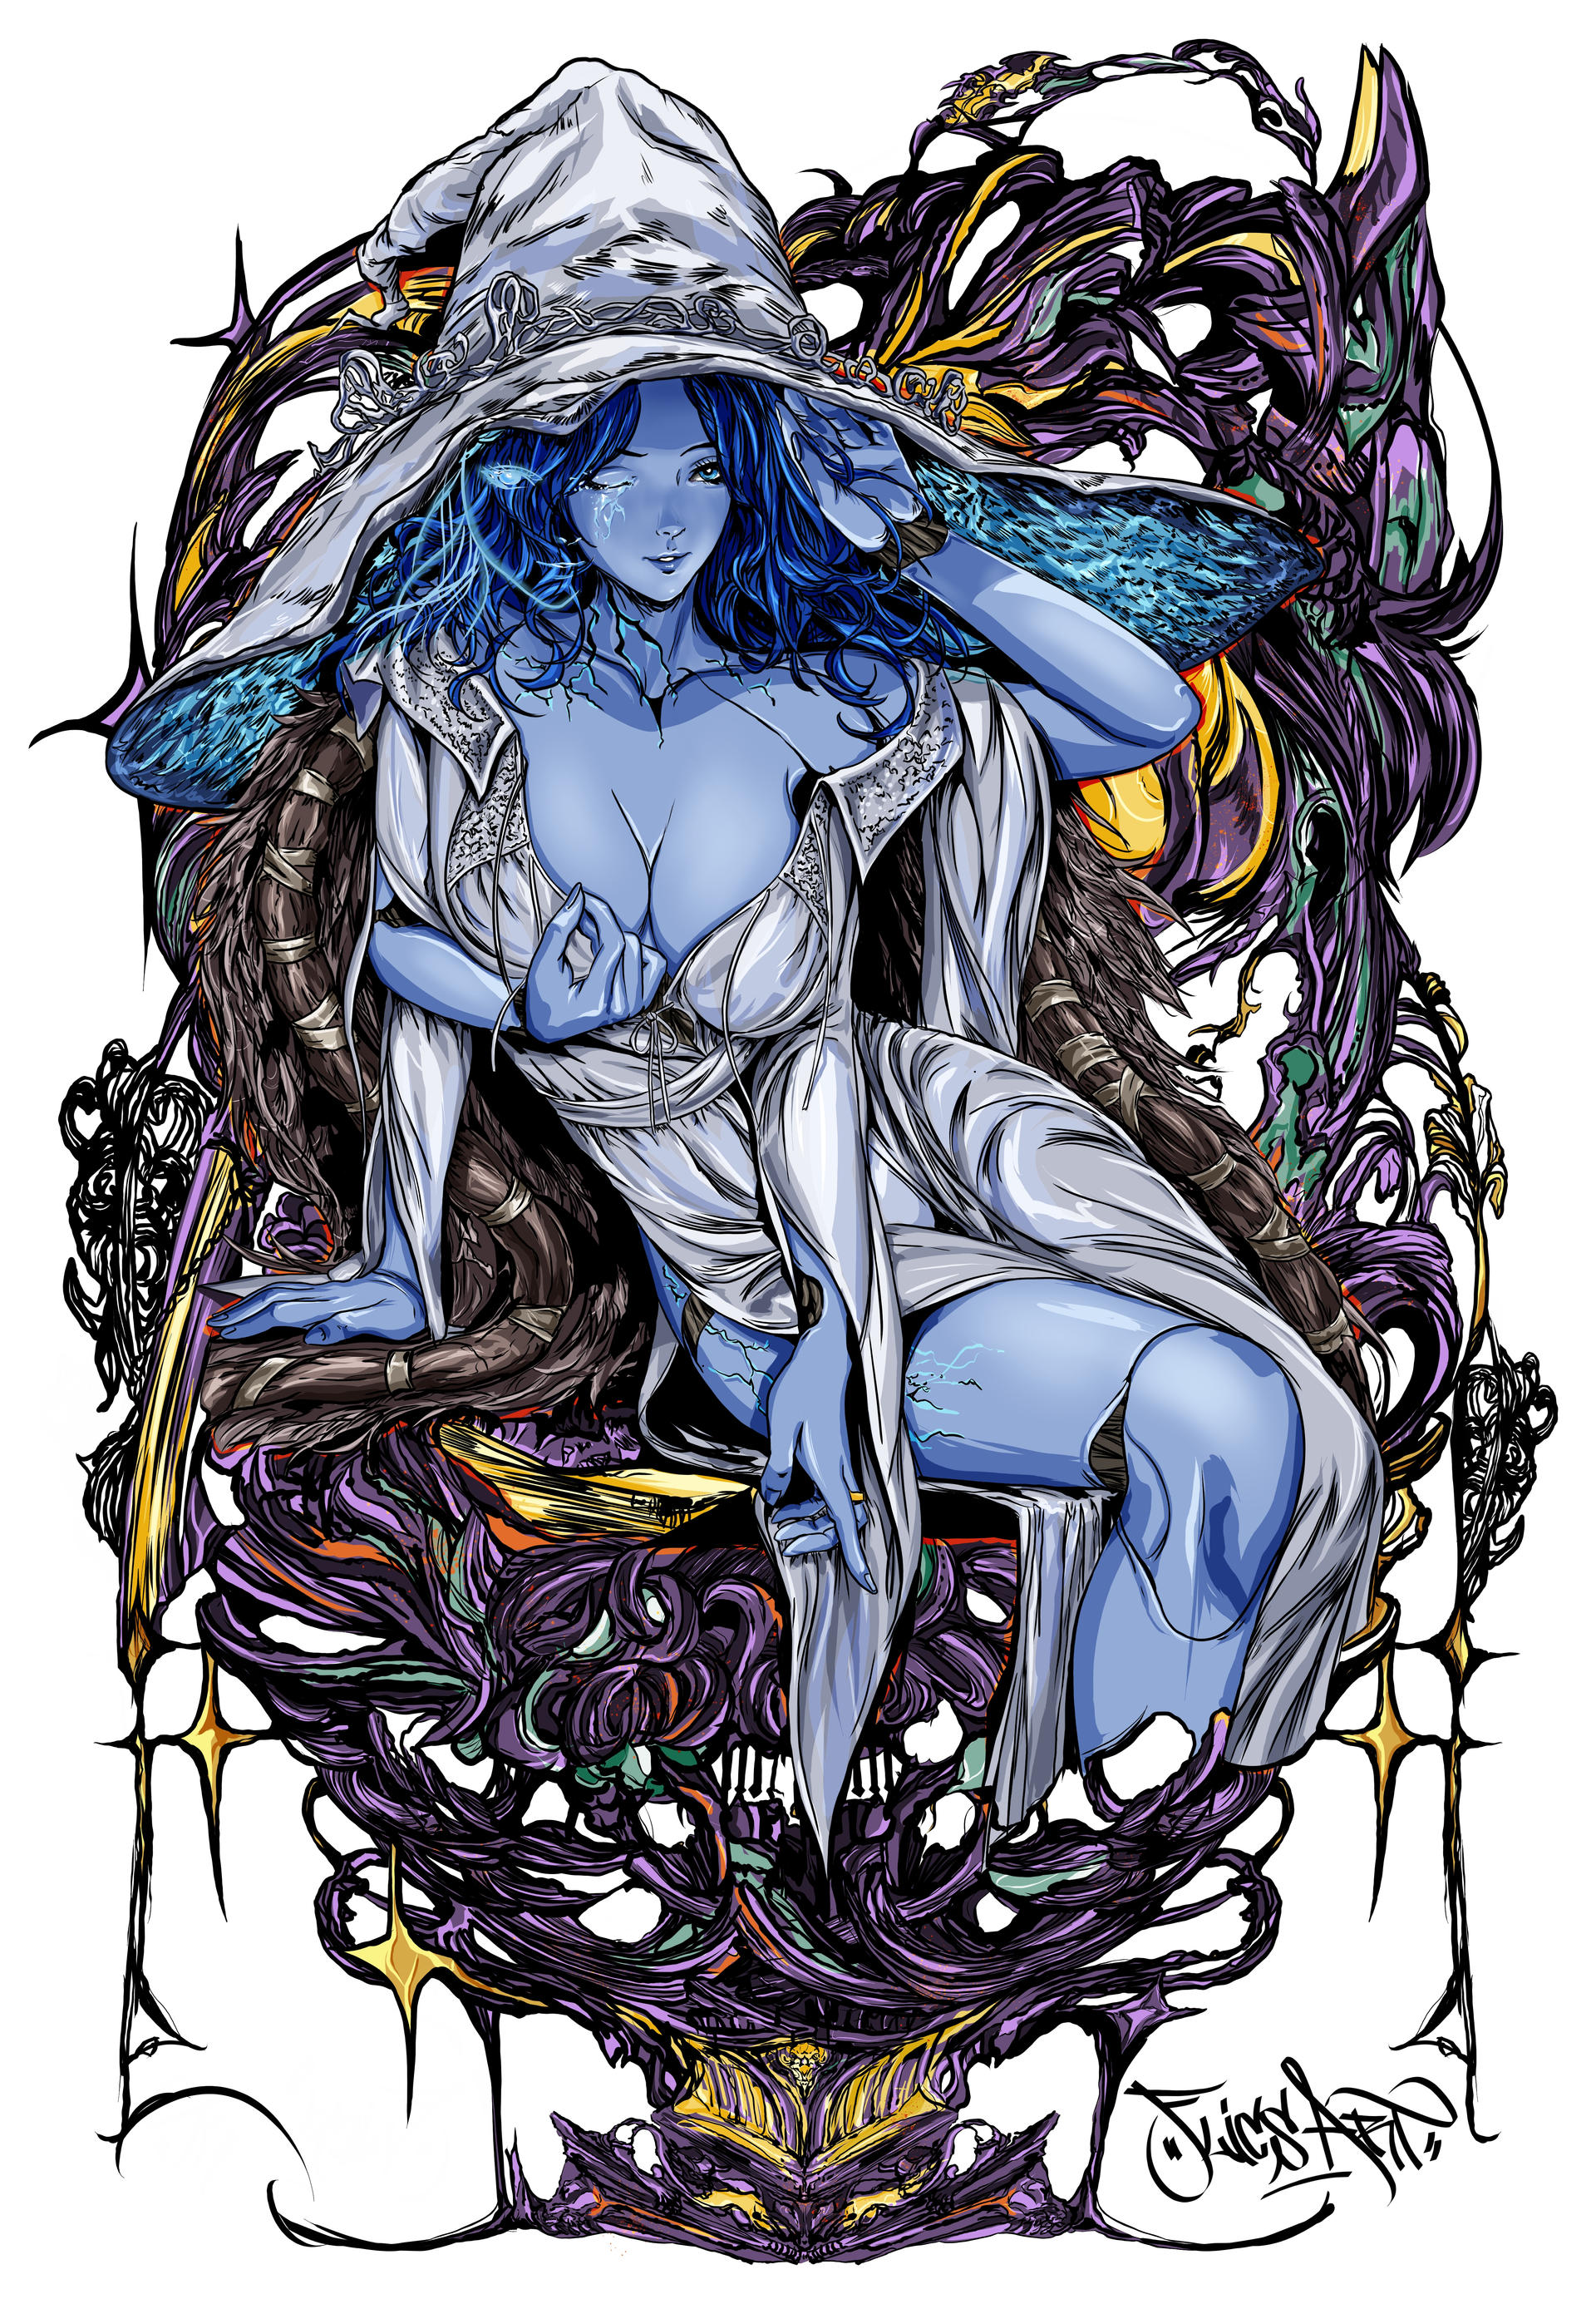 Ranni, The witch / Elden Ring Fan Art by Juan-J-De-La-Cruz on DeviantArt